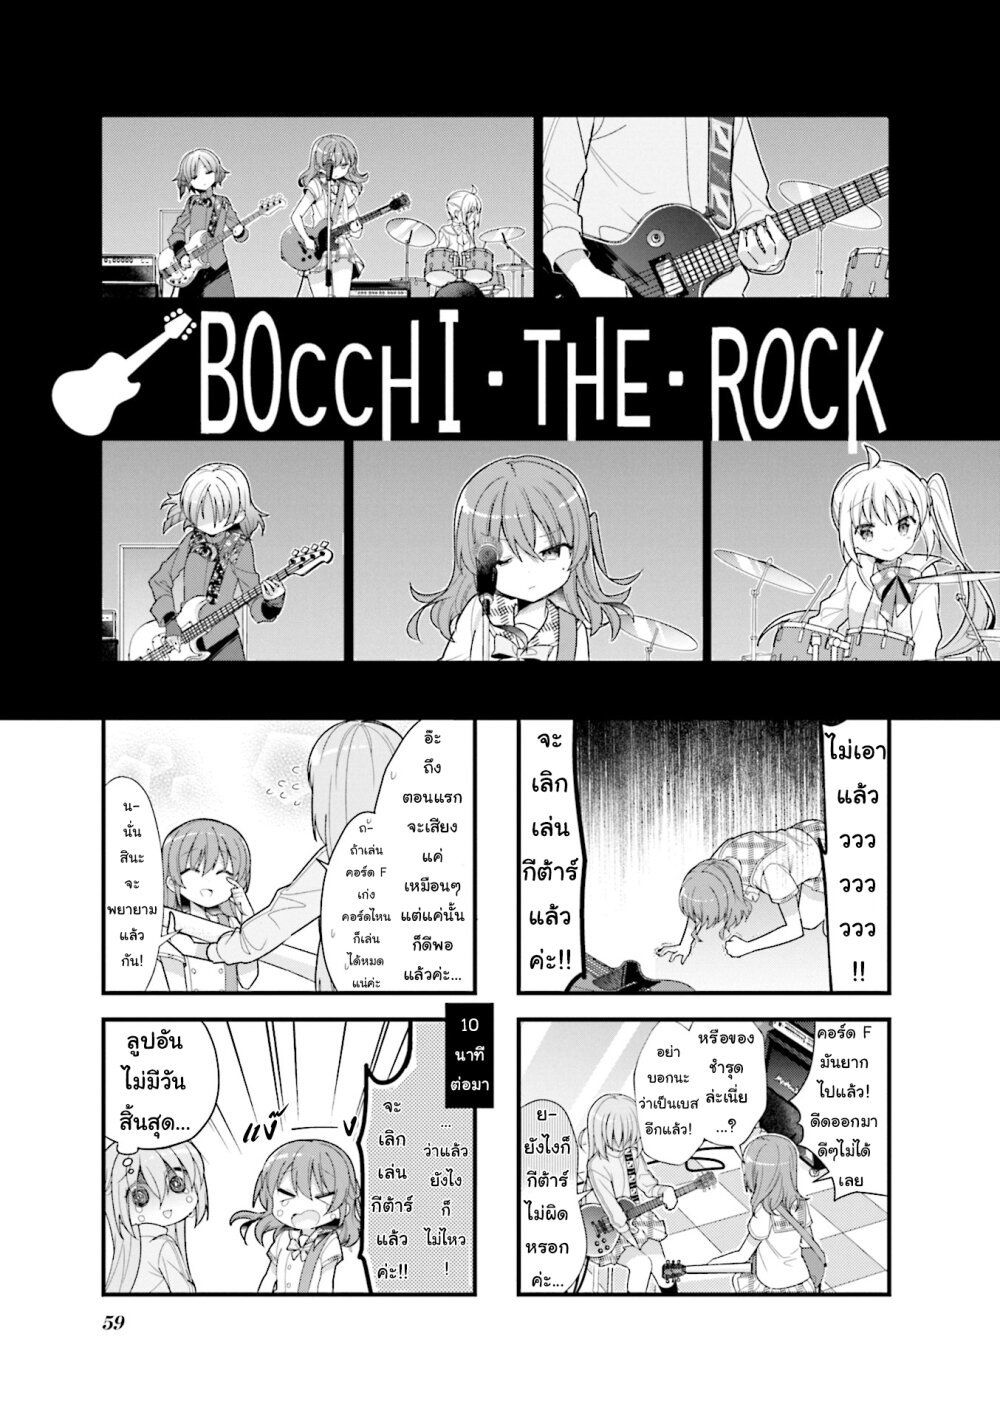 Bocchi the Rock! 7 (1)